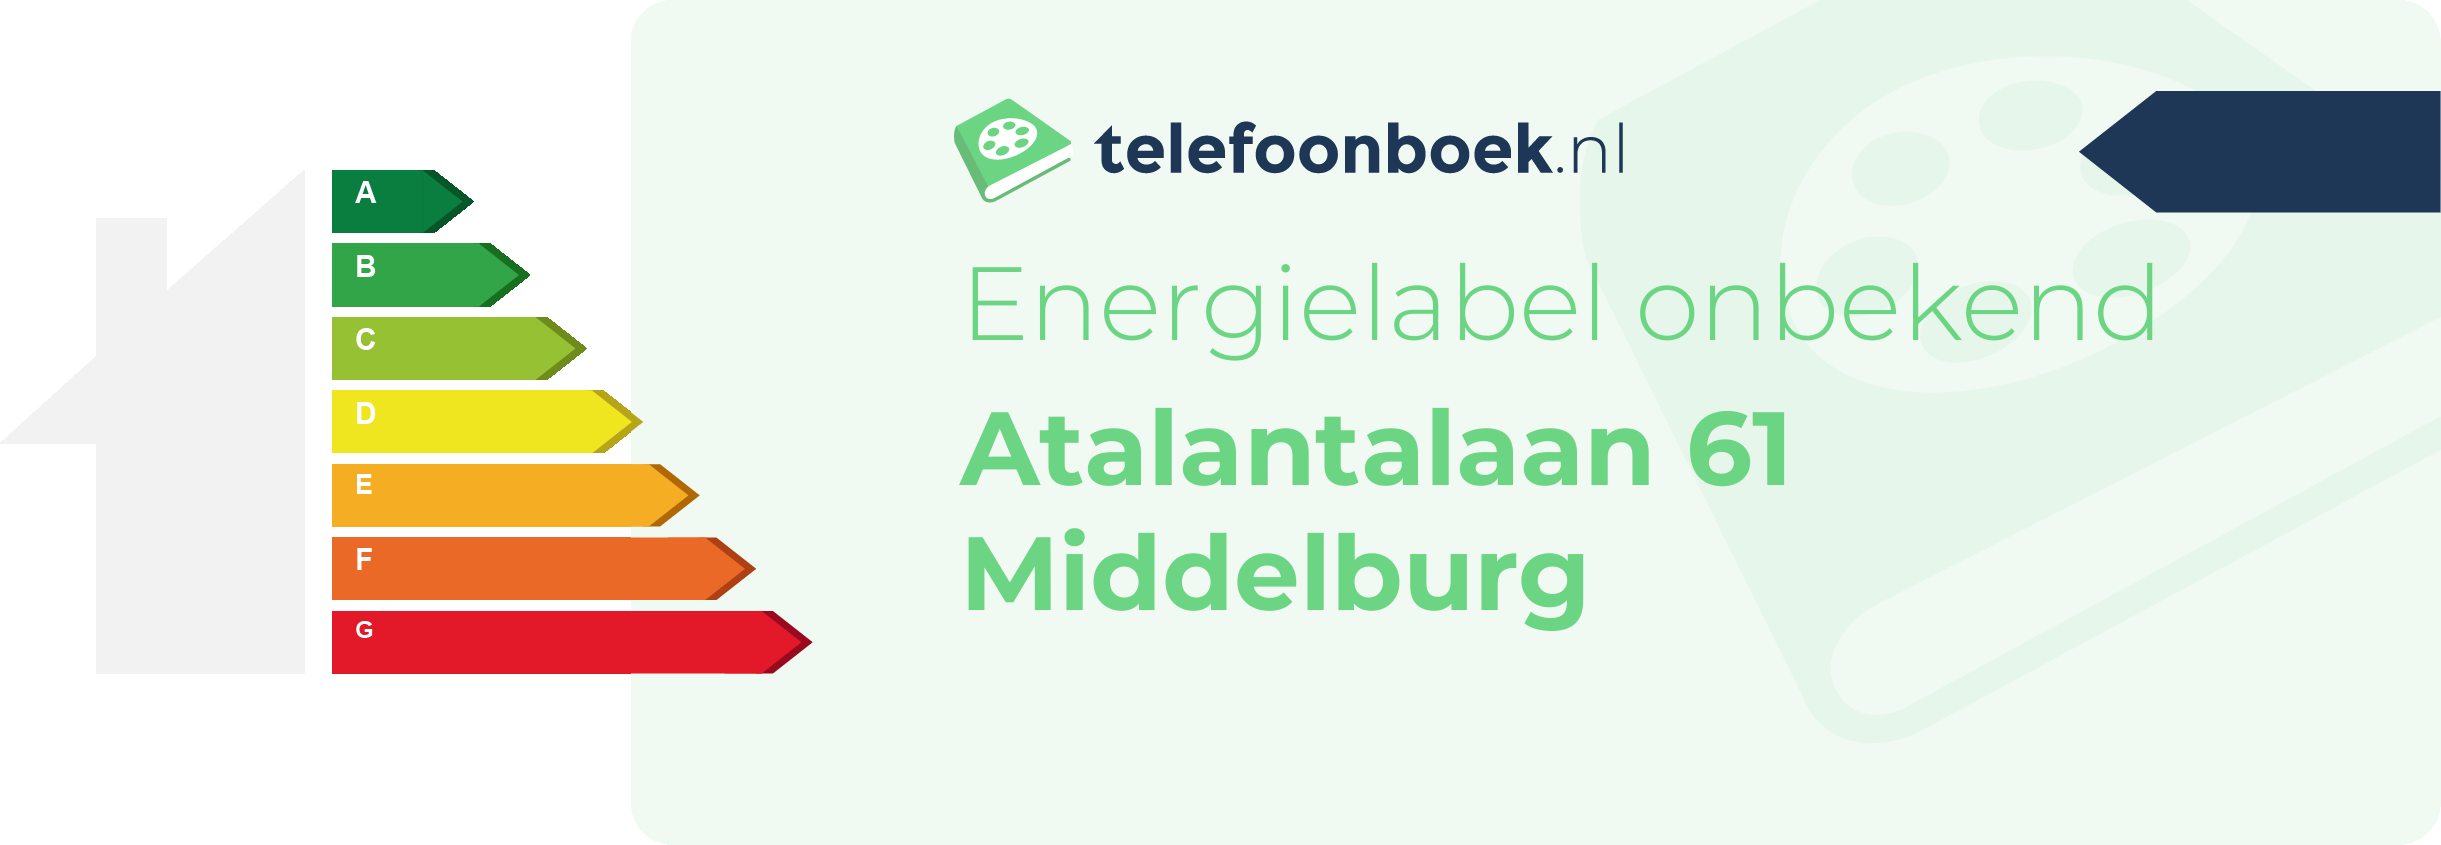 Energielabel Atalantalaan 61 Middelburg